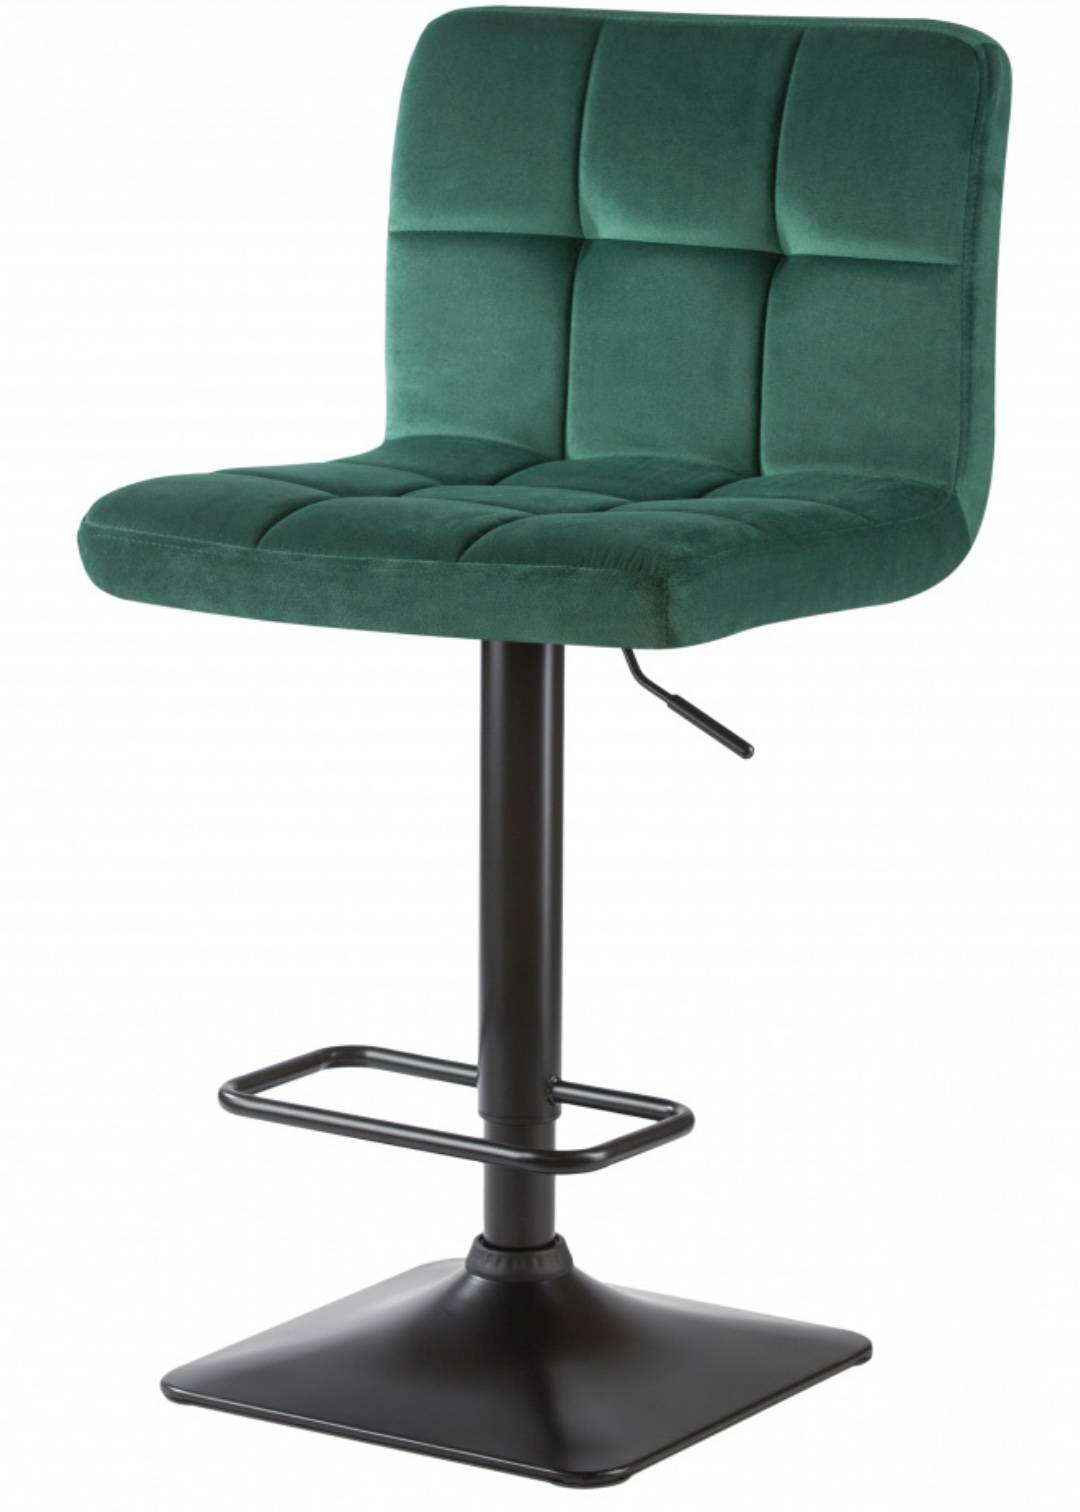 Купить зелёный стул Dominic в romanta.ru